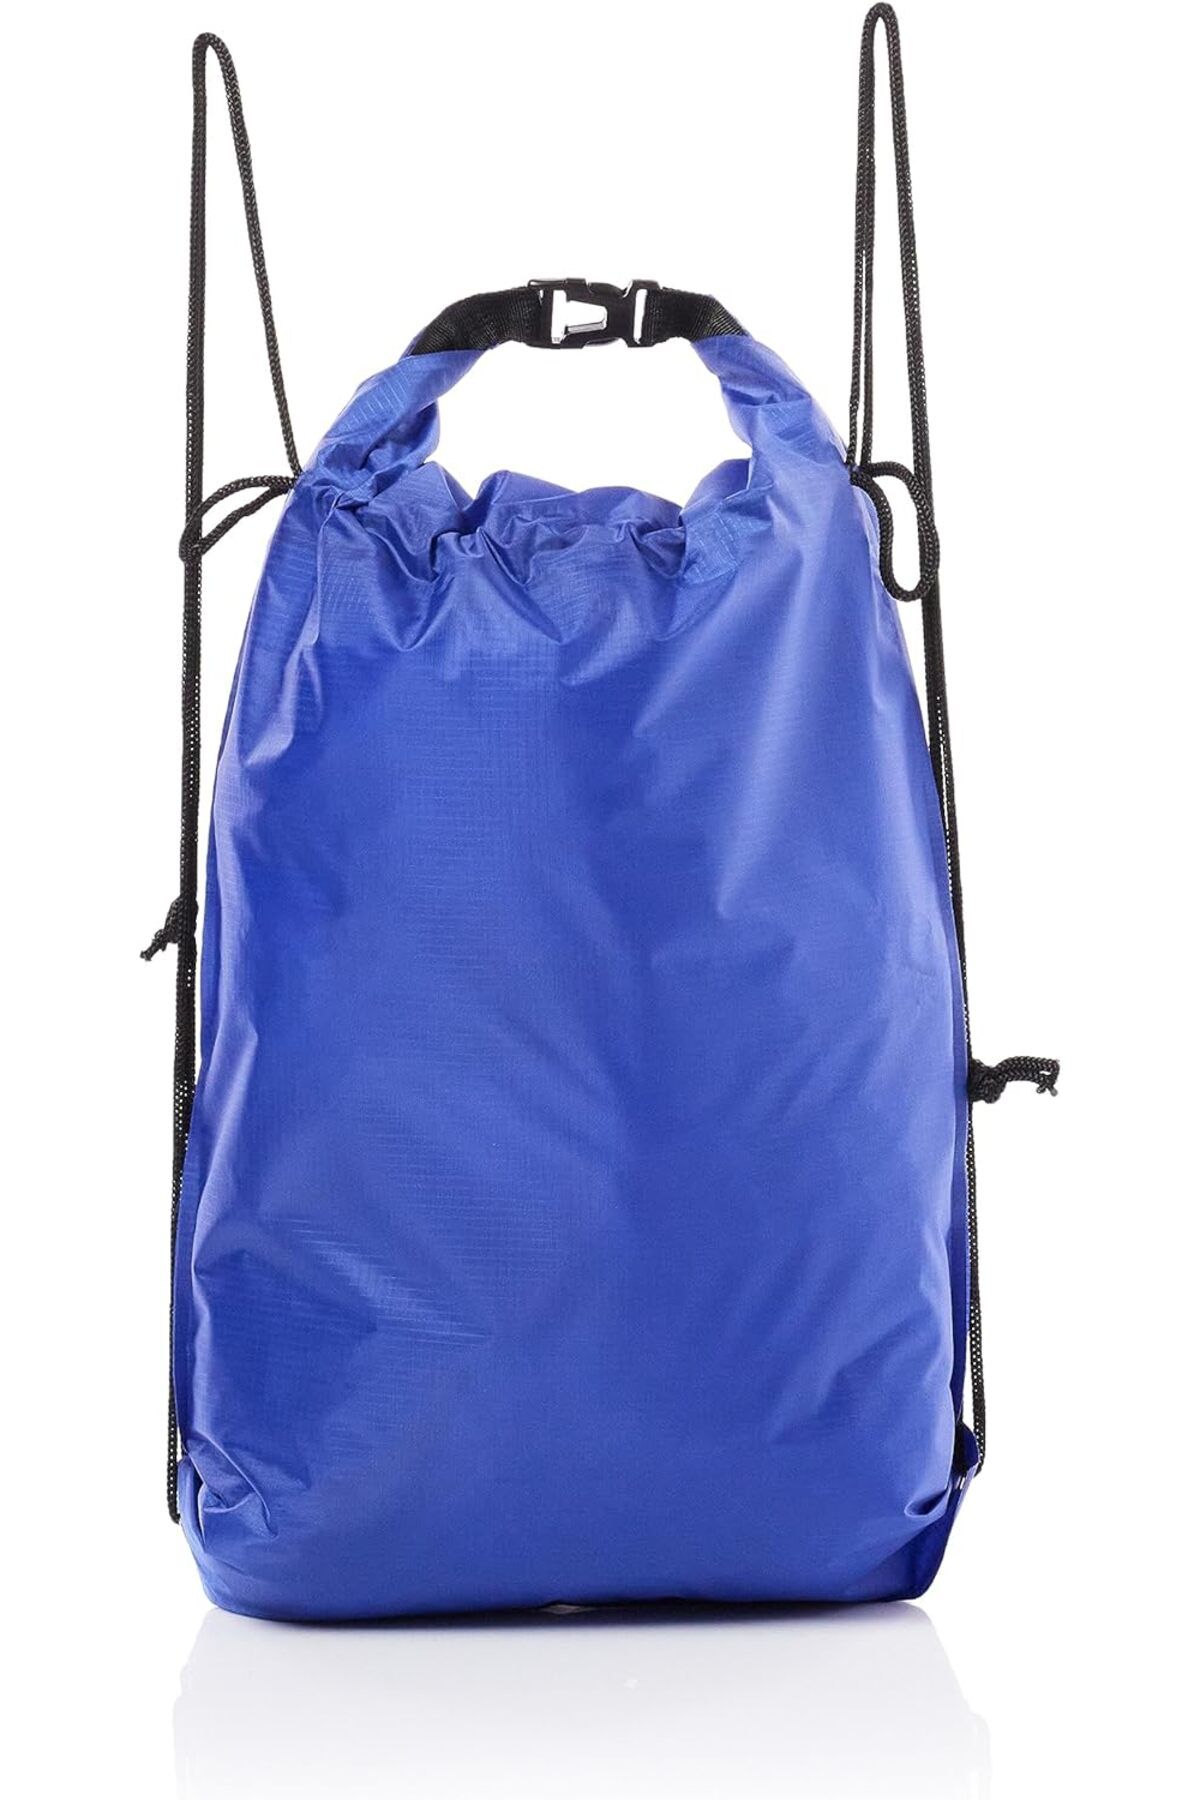 Kaliko Soğutucu Çanta Soğutucu Çanta Cooler Bag Unisex, Kırmızı, Tek Boy